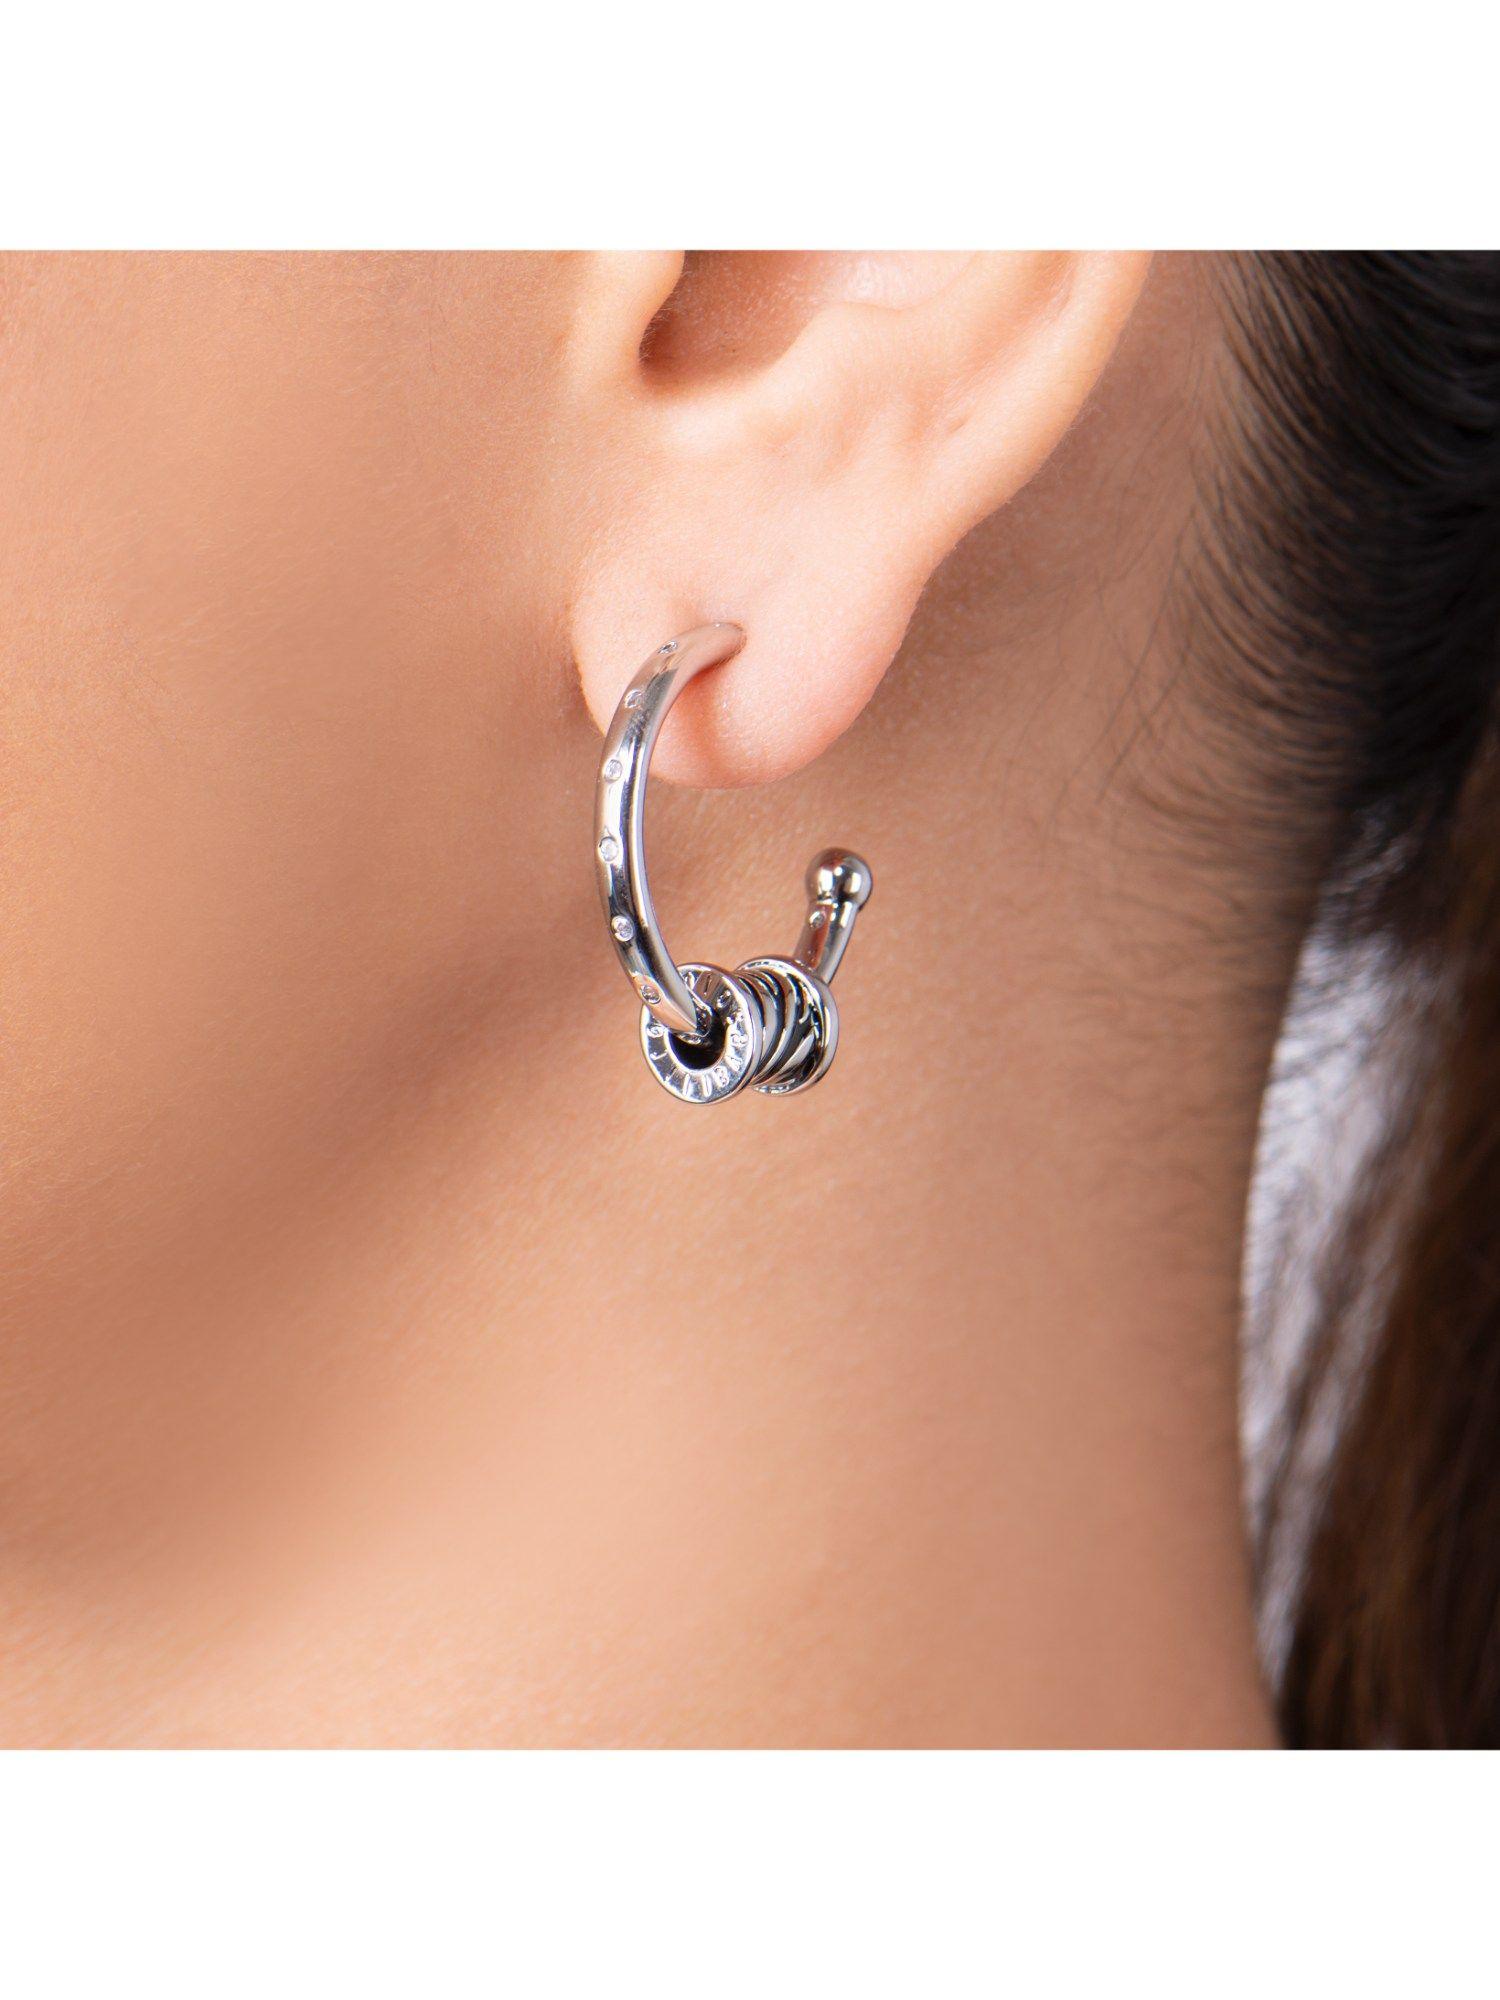 zebra 2 earrings